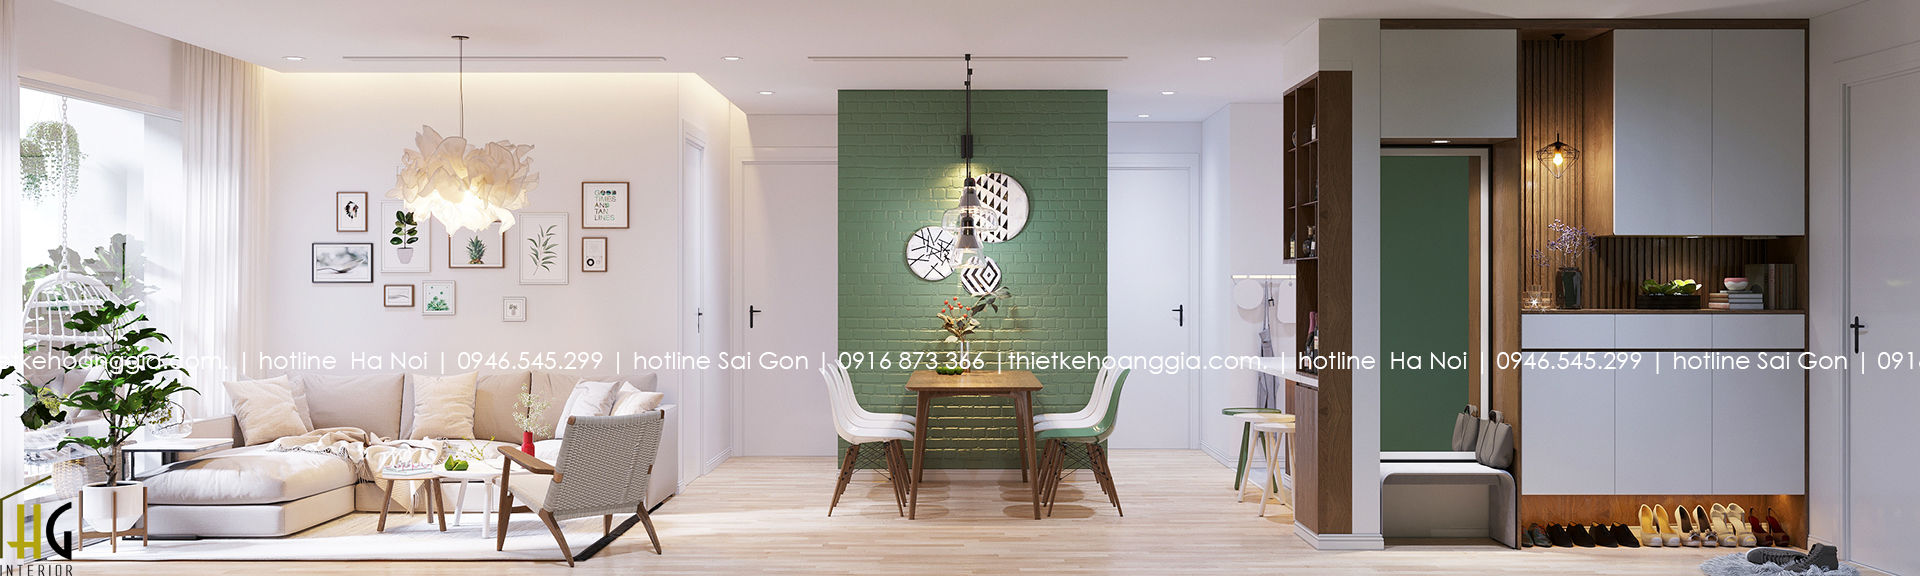 Thiết kế nội thất chung cư 55m cho chị Lan Anh, Nội Thất Hoàng Gia Nội Thất Hoàng Gia Dining room